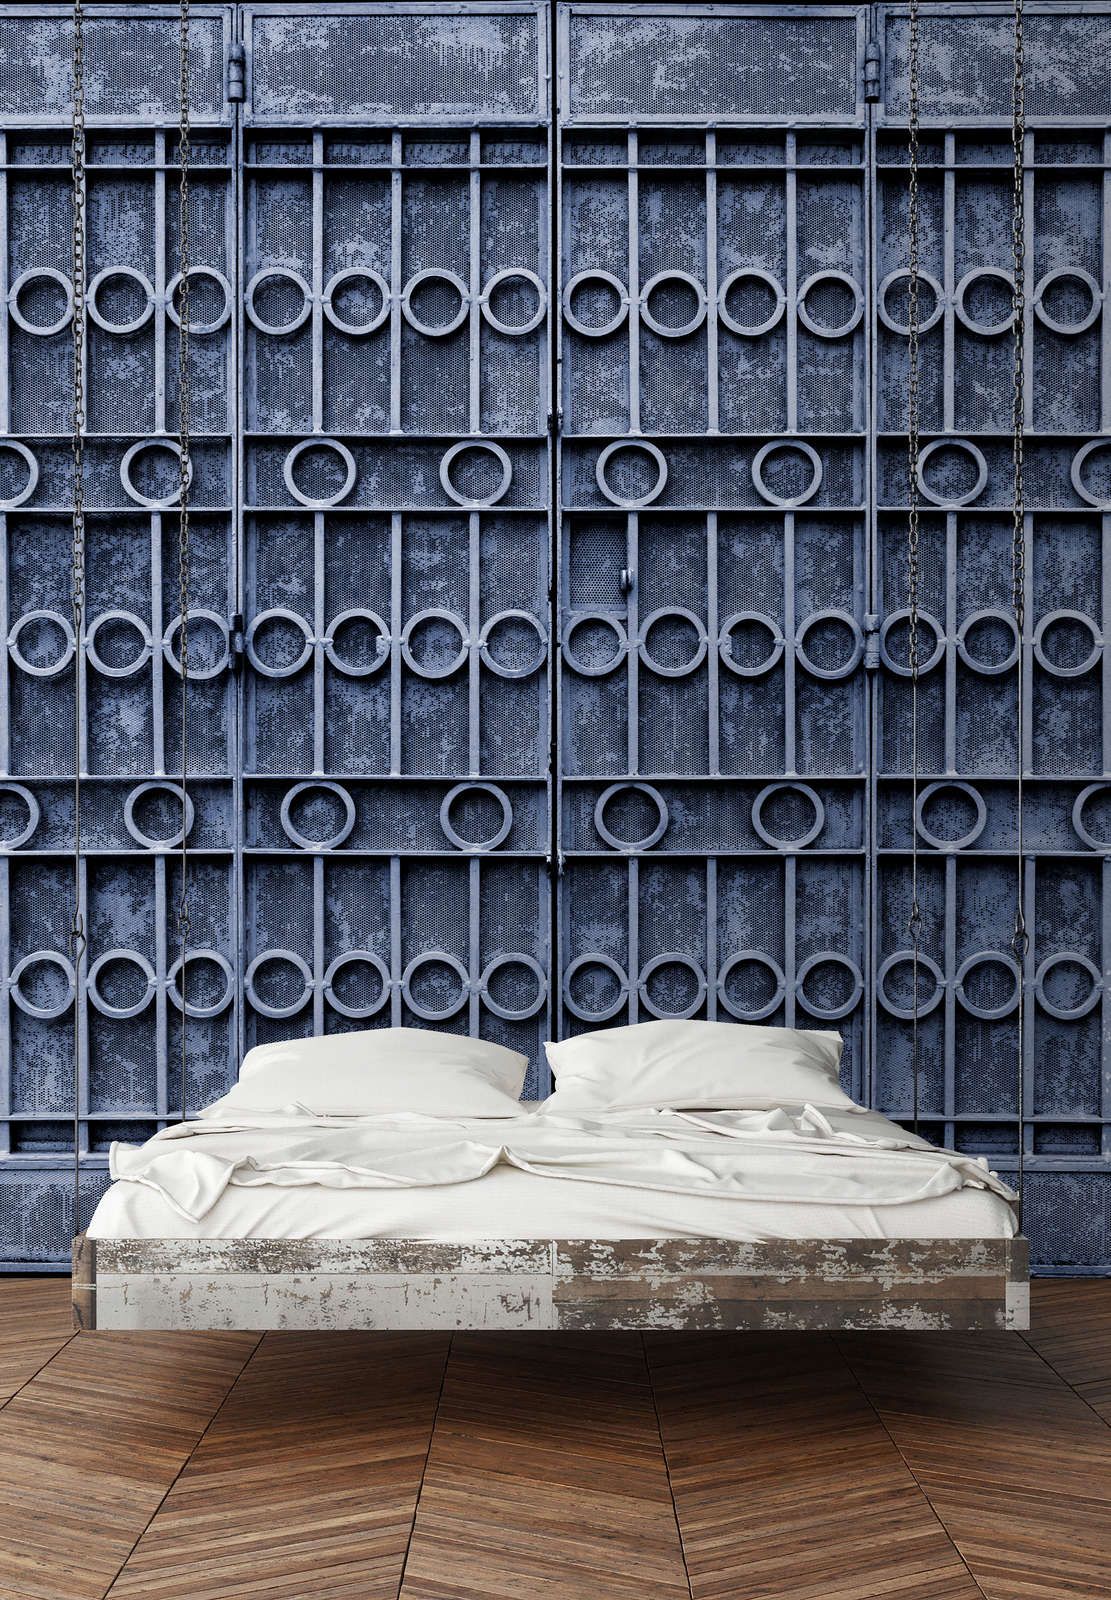             Fotomurali »jodhpur« - Primo piano di una recinzione metallica blu - Materiali non tessuto liscio, leggermente perlato e scintillante
        